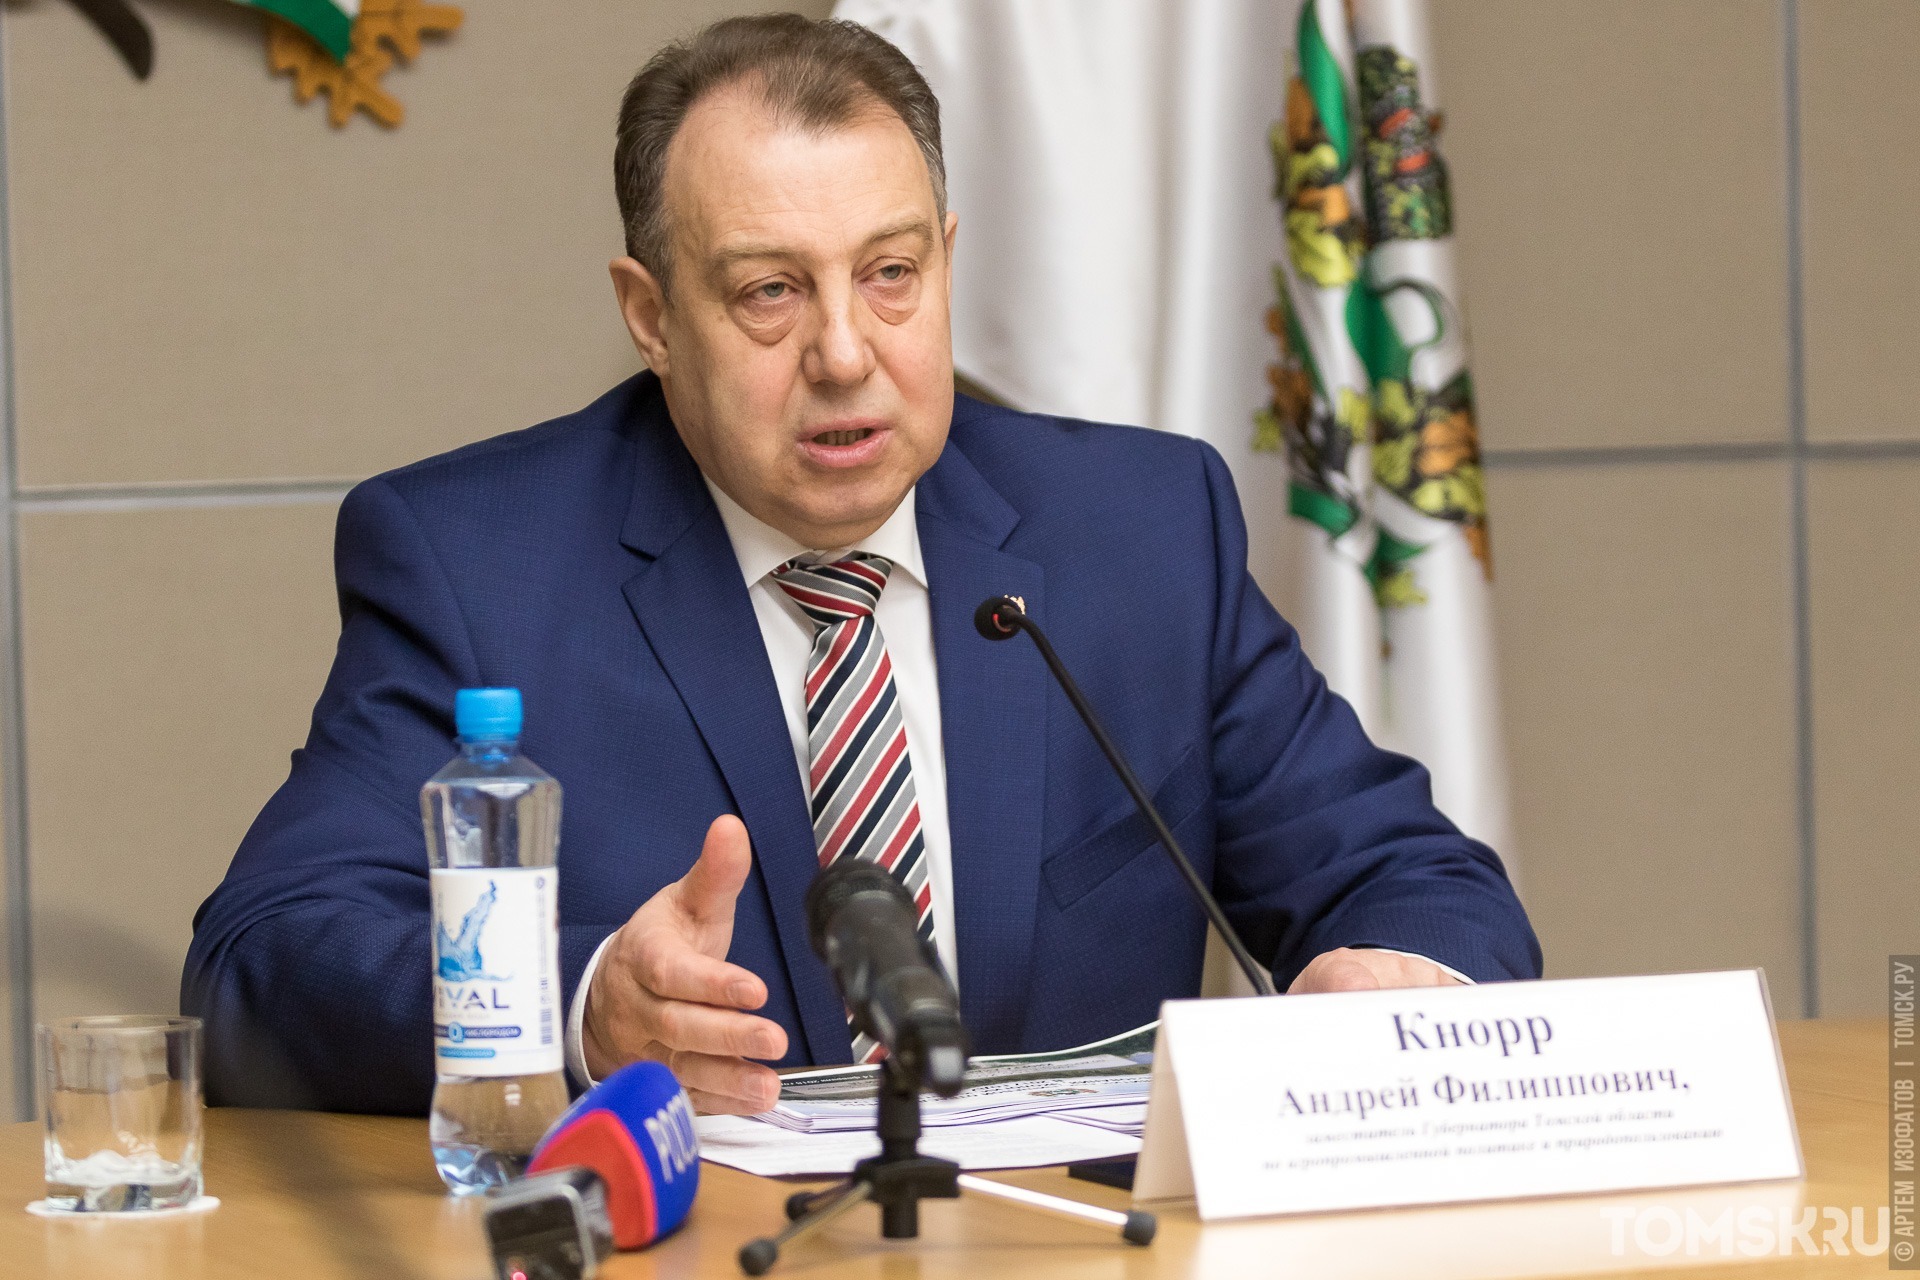 В этом году замгубернатора Андрей Кнорр завершит работу в областной администрации